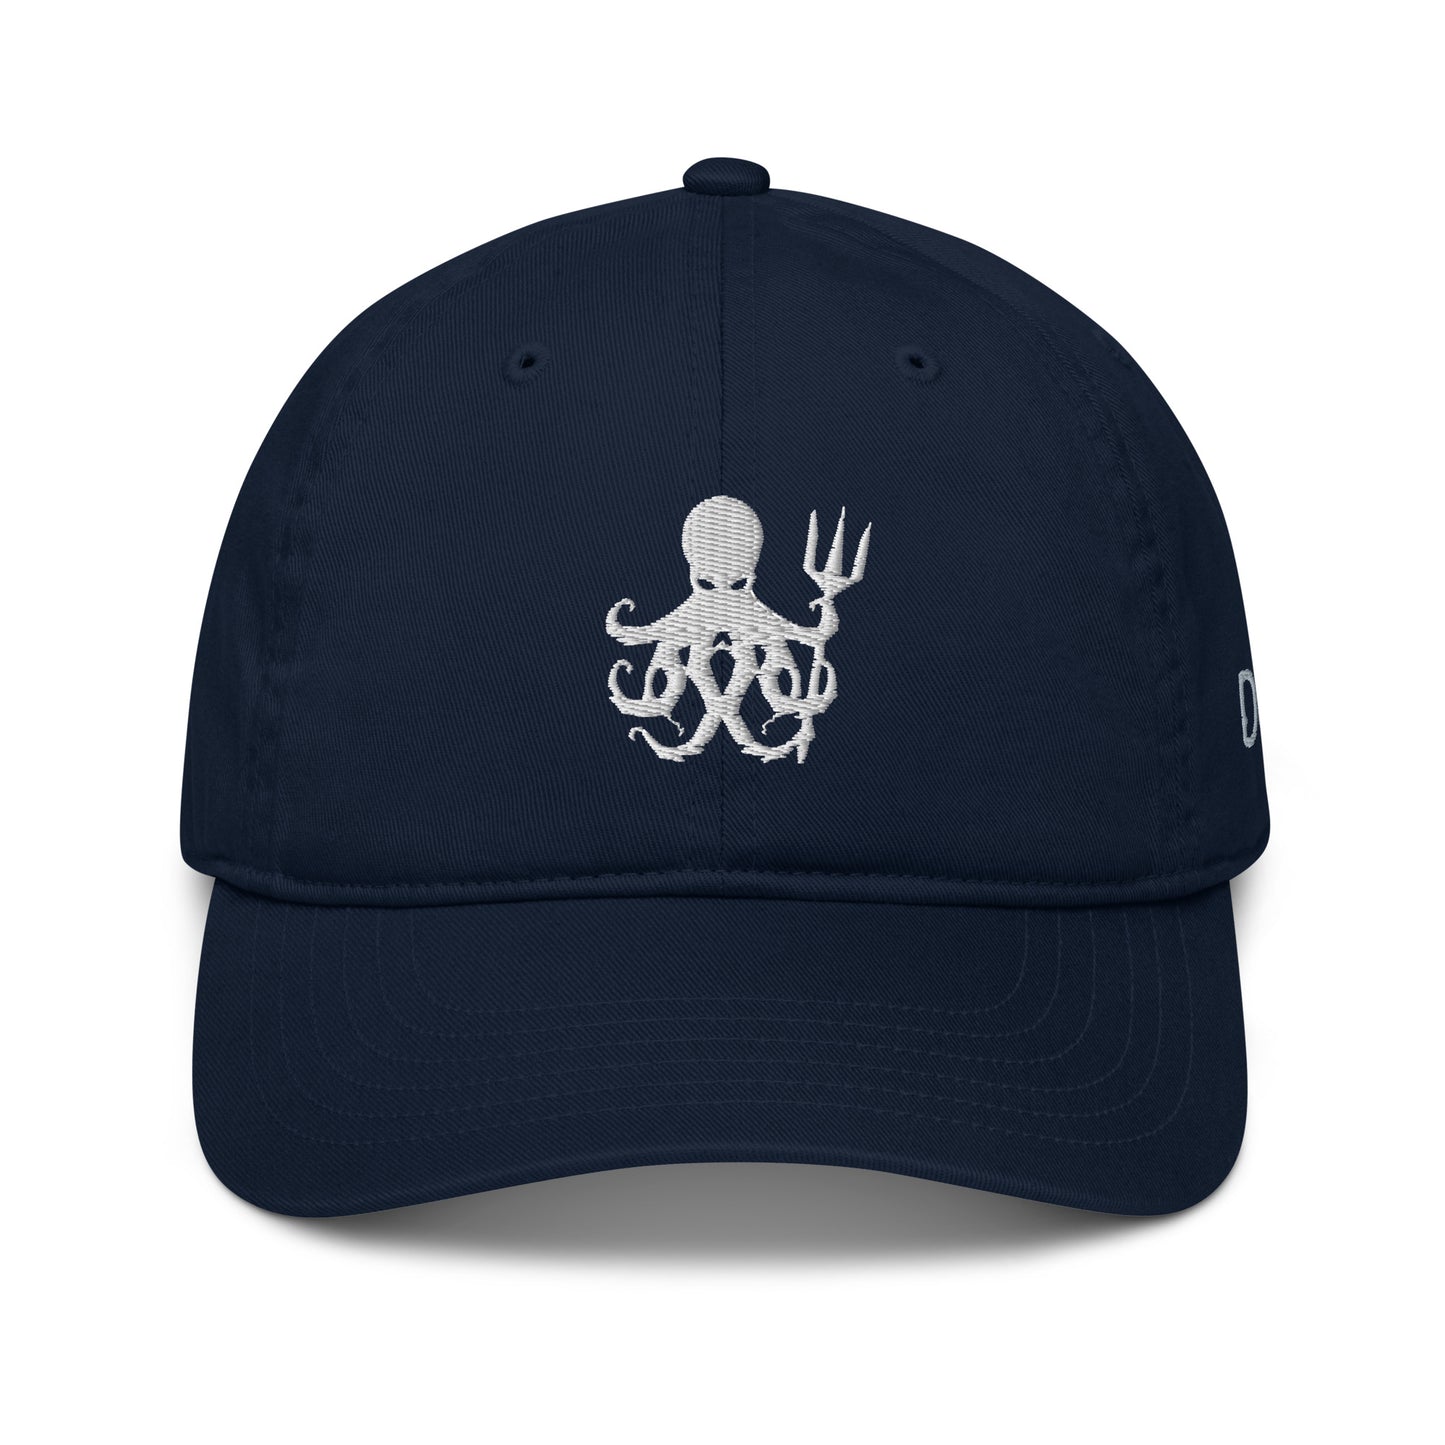 DeepSea Official Kraken Hat